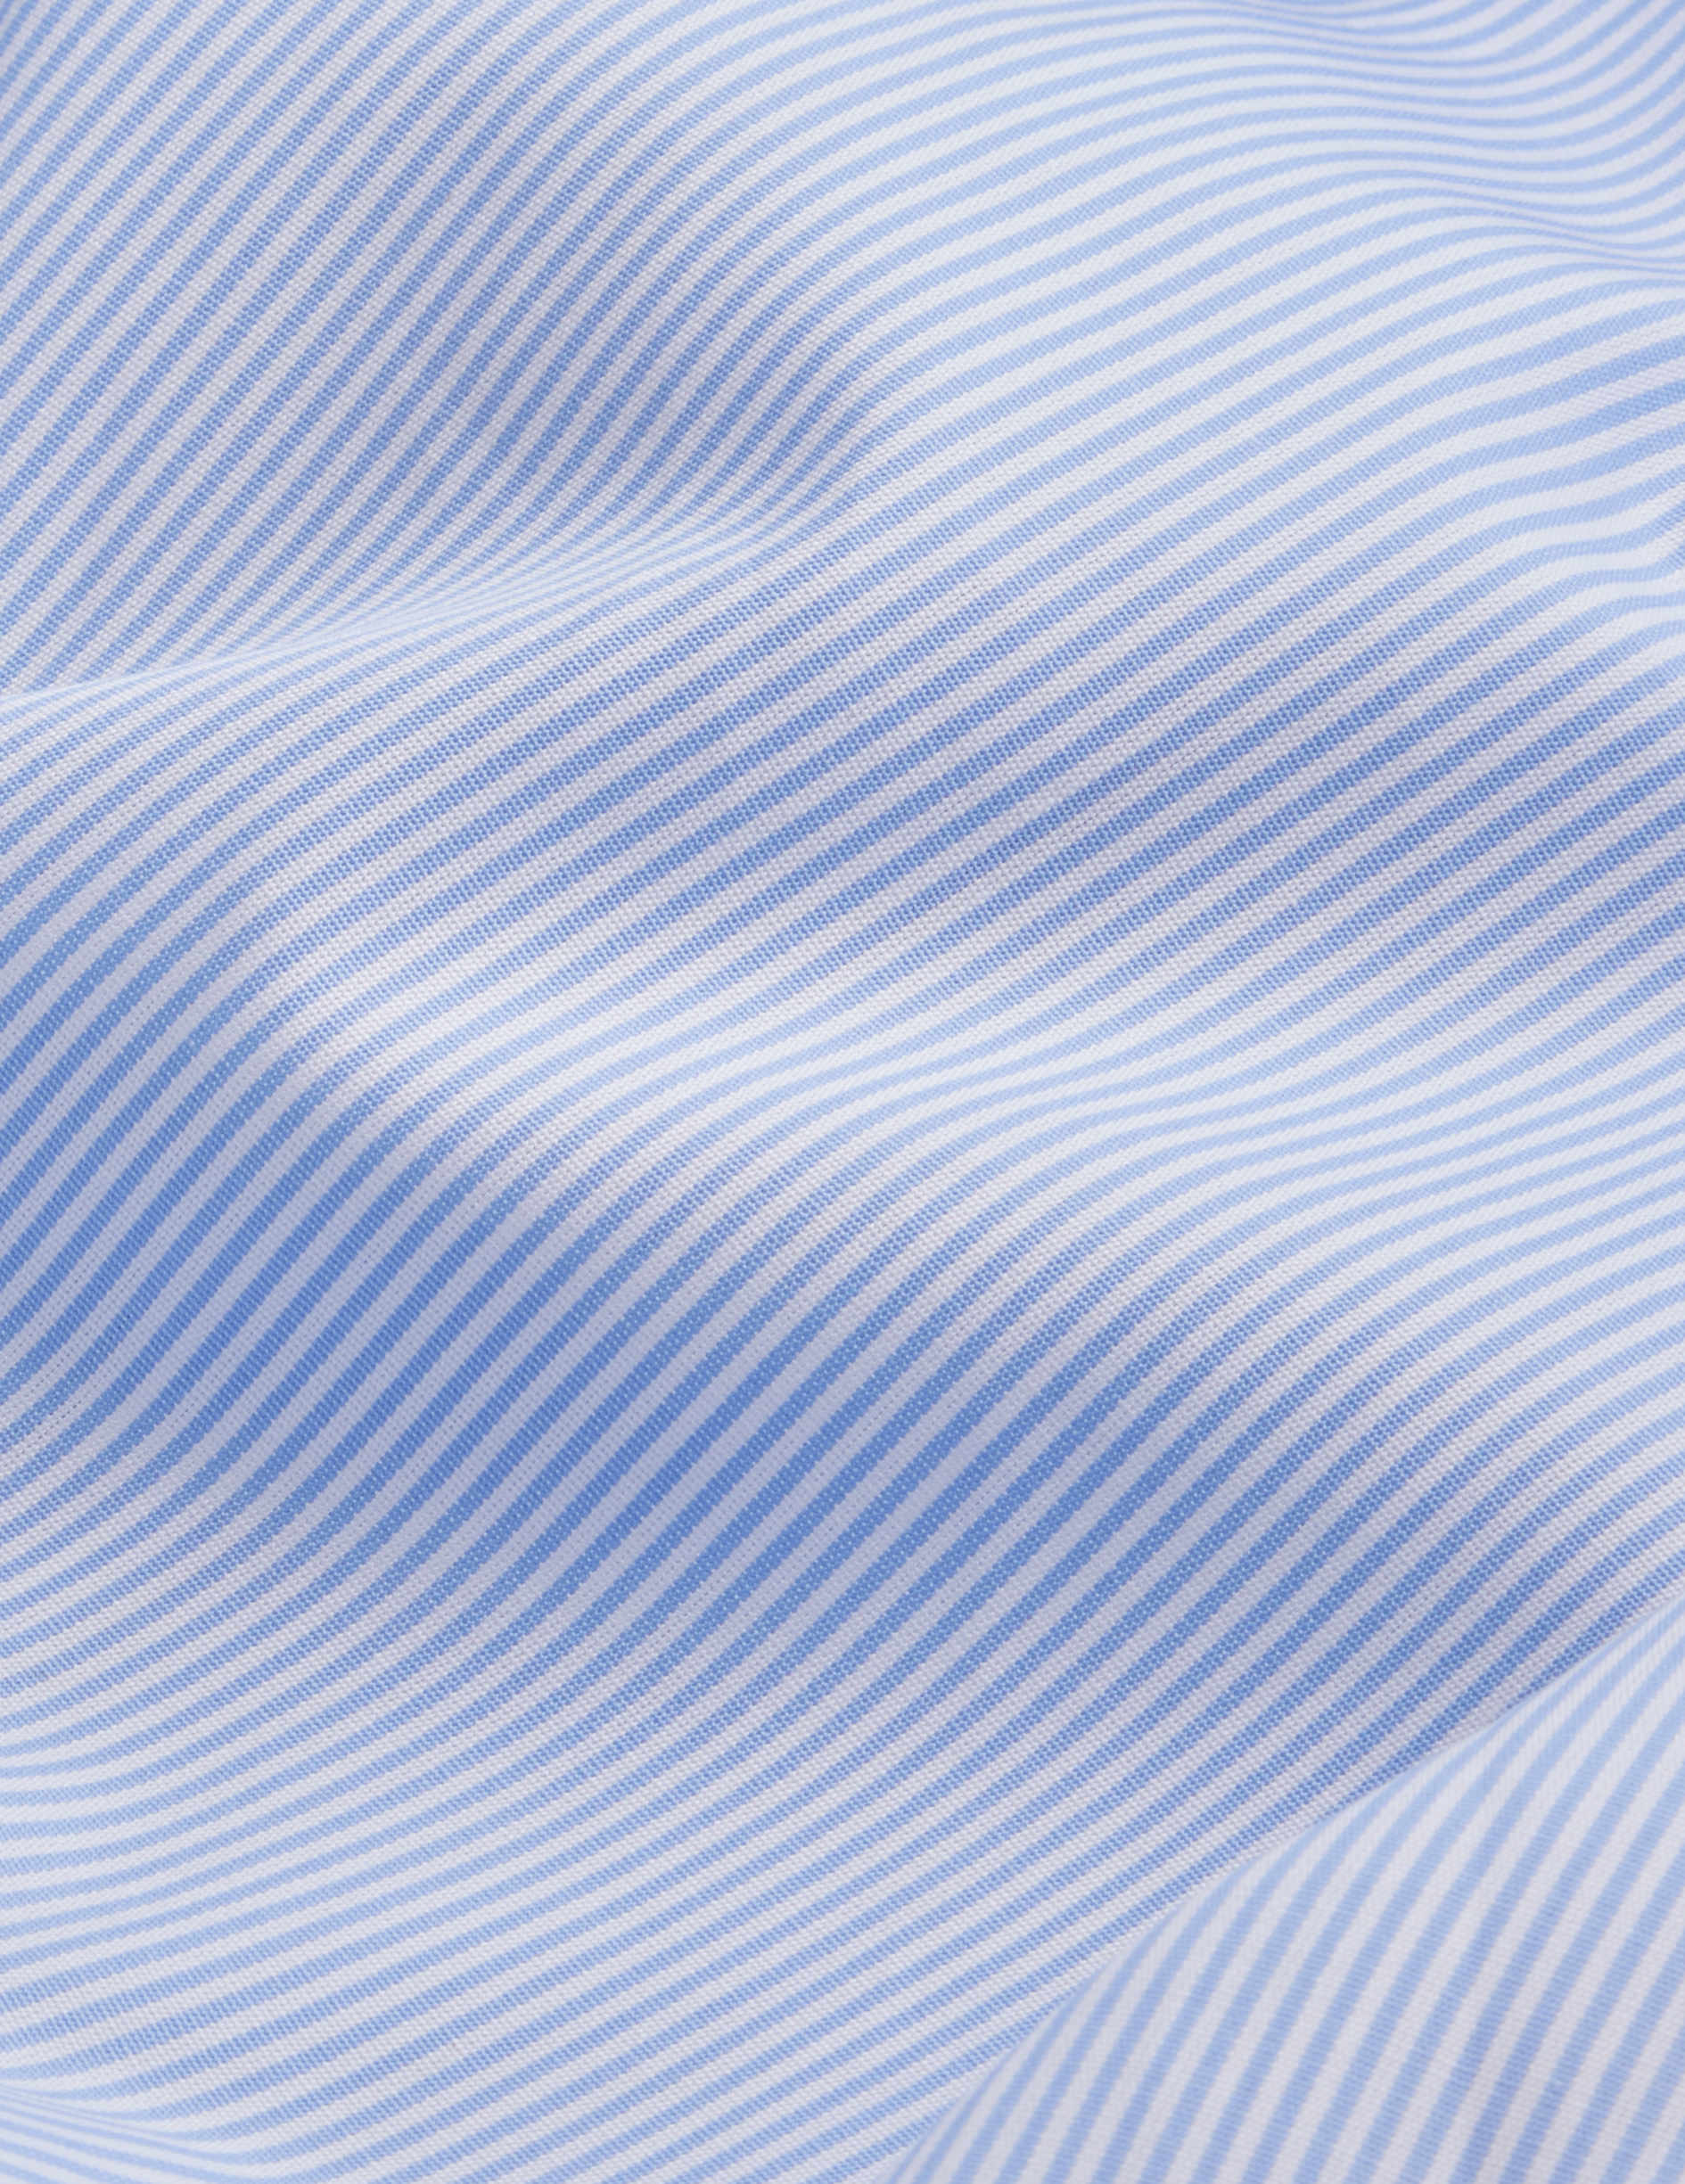 Chemise carl rayée bleue - Popeline - Col Droit ouvert